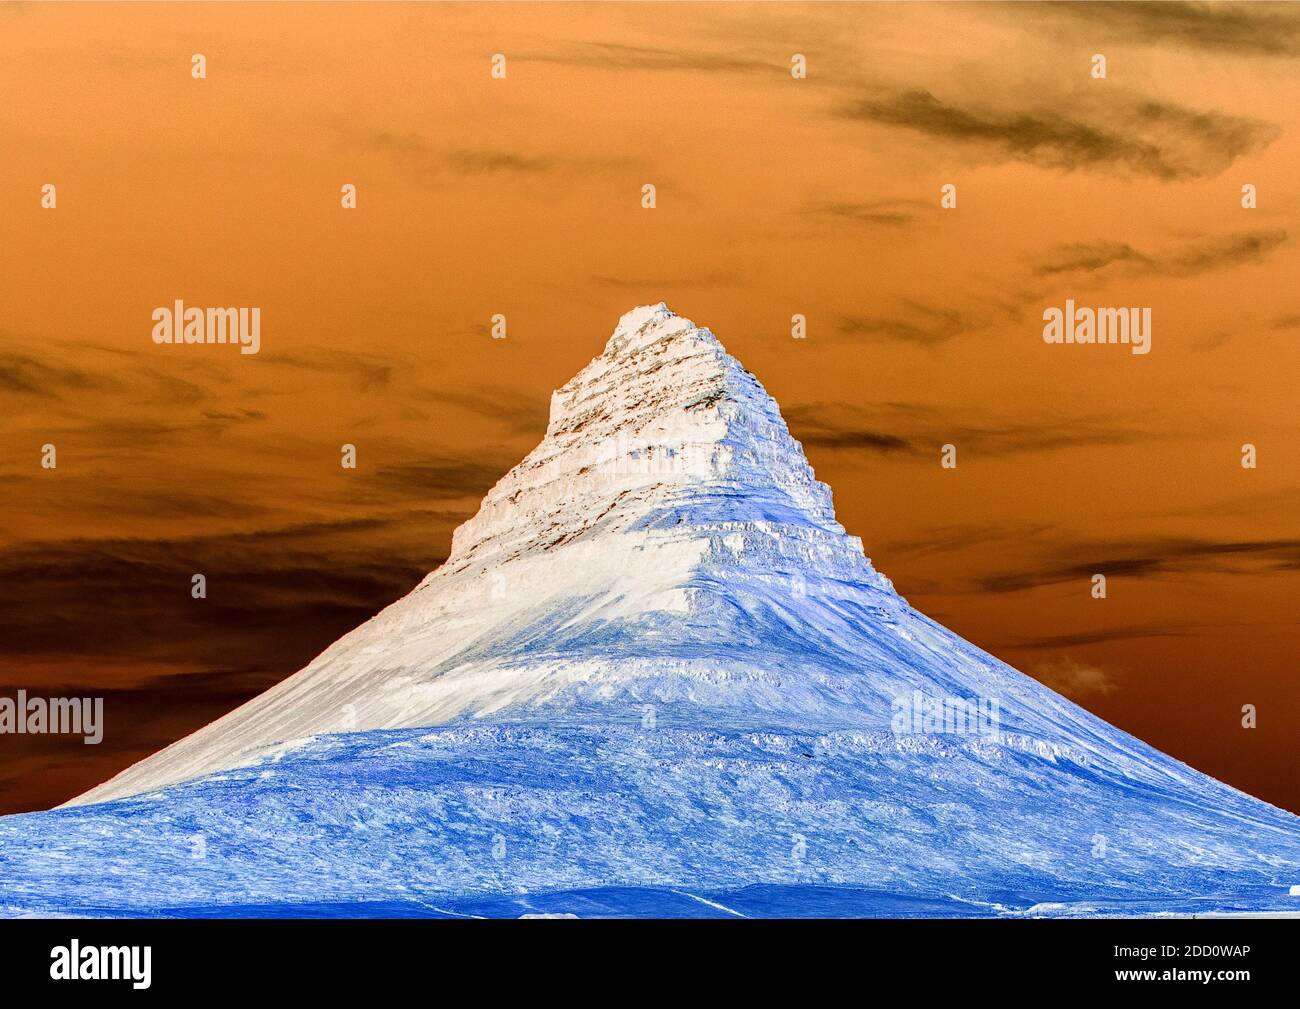 Montagna Kirkjufell in Islanda. L'immagine è stata ritagliata con inversioni di colore e modifiche rispetto all'originale. Copia spazio per aggiungere testo. Foto Stock